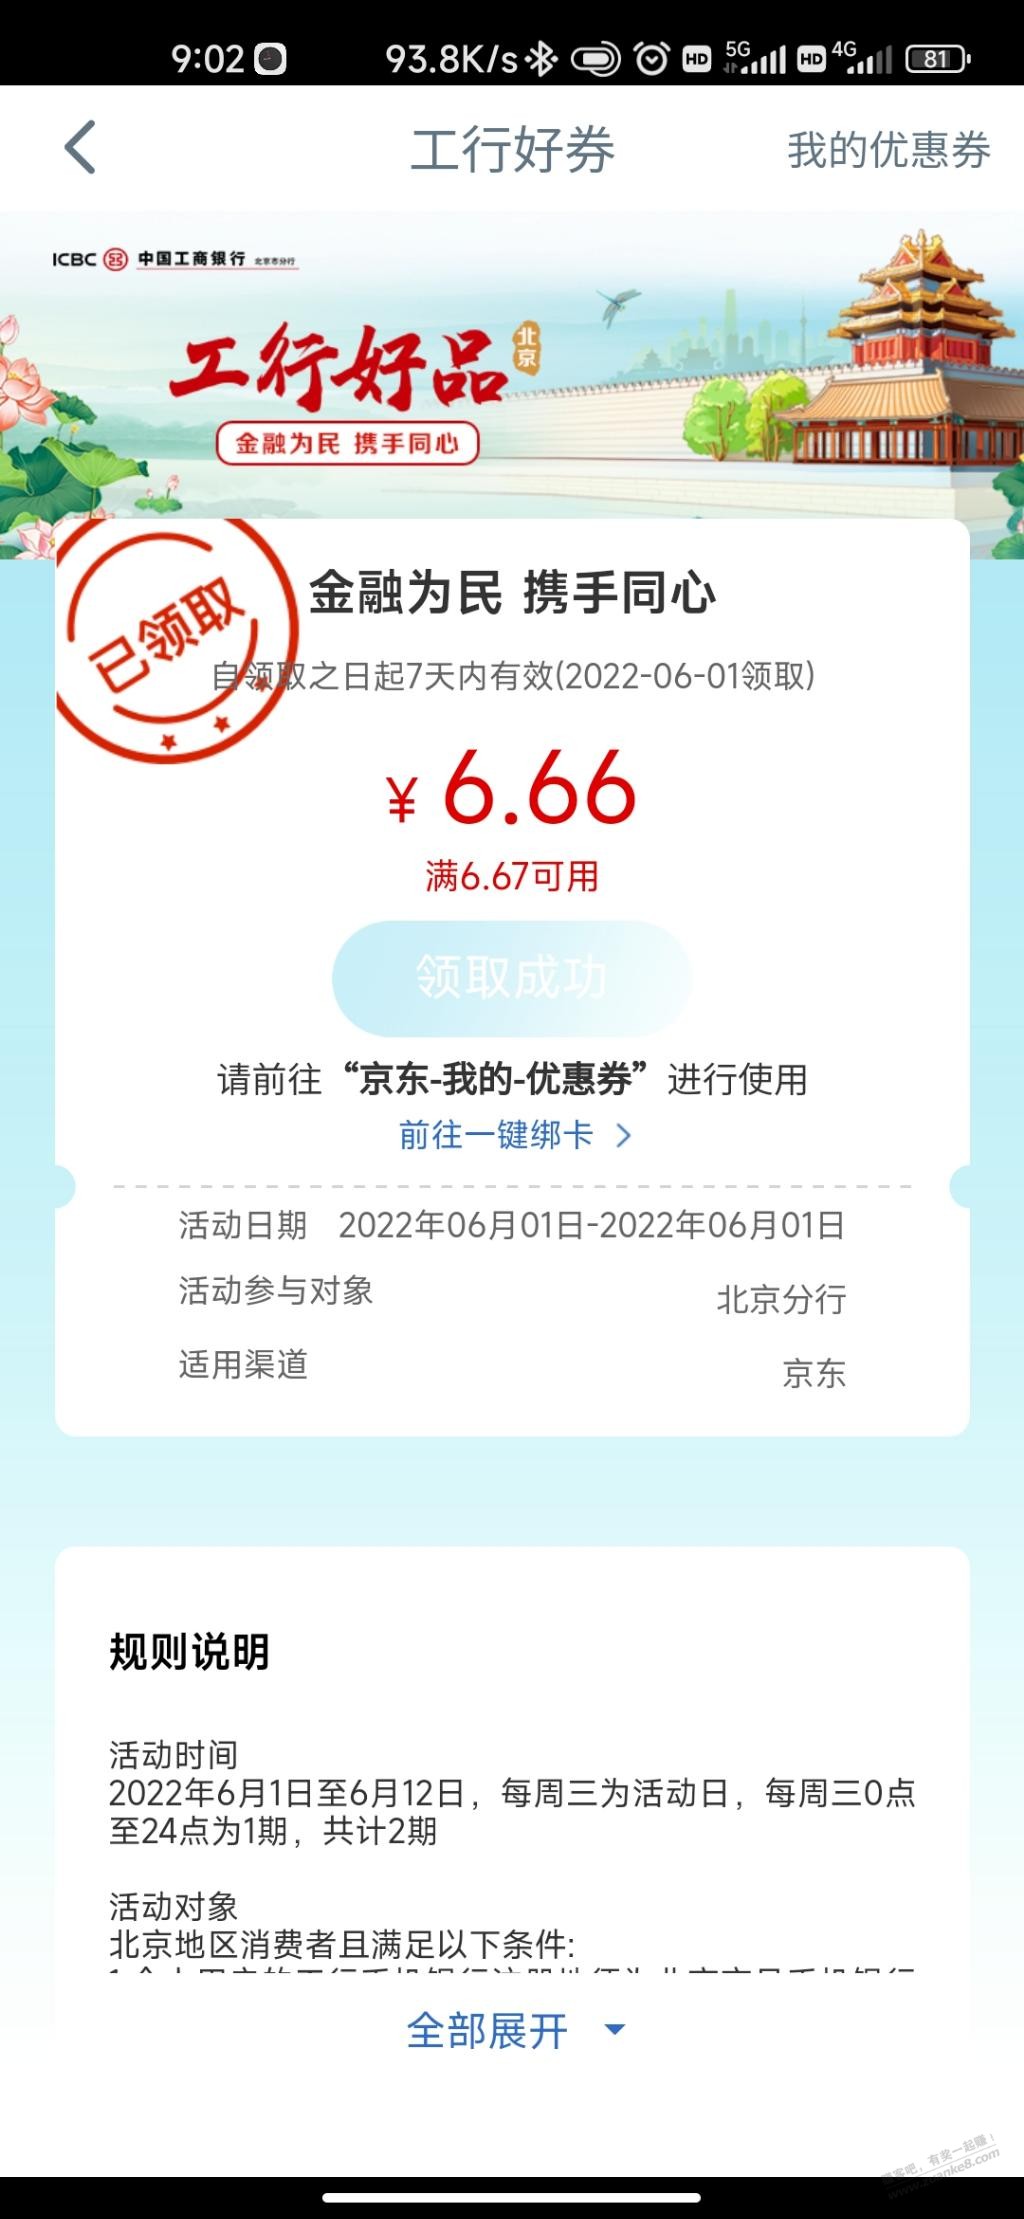 工行app 定位北京，工行消费季 京东6.66优惠券